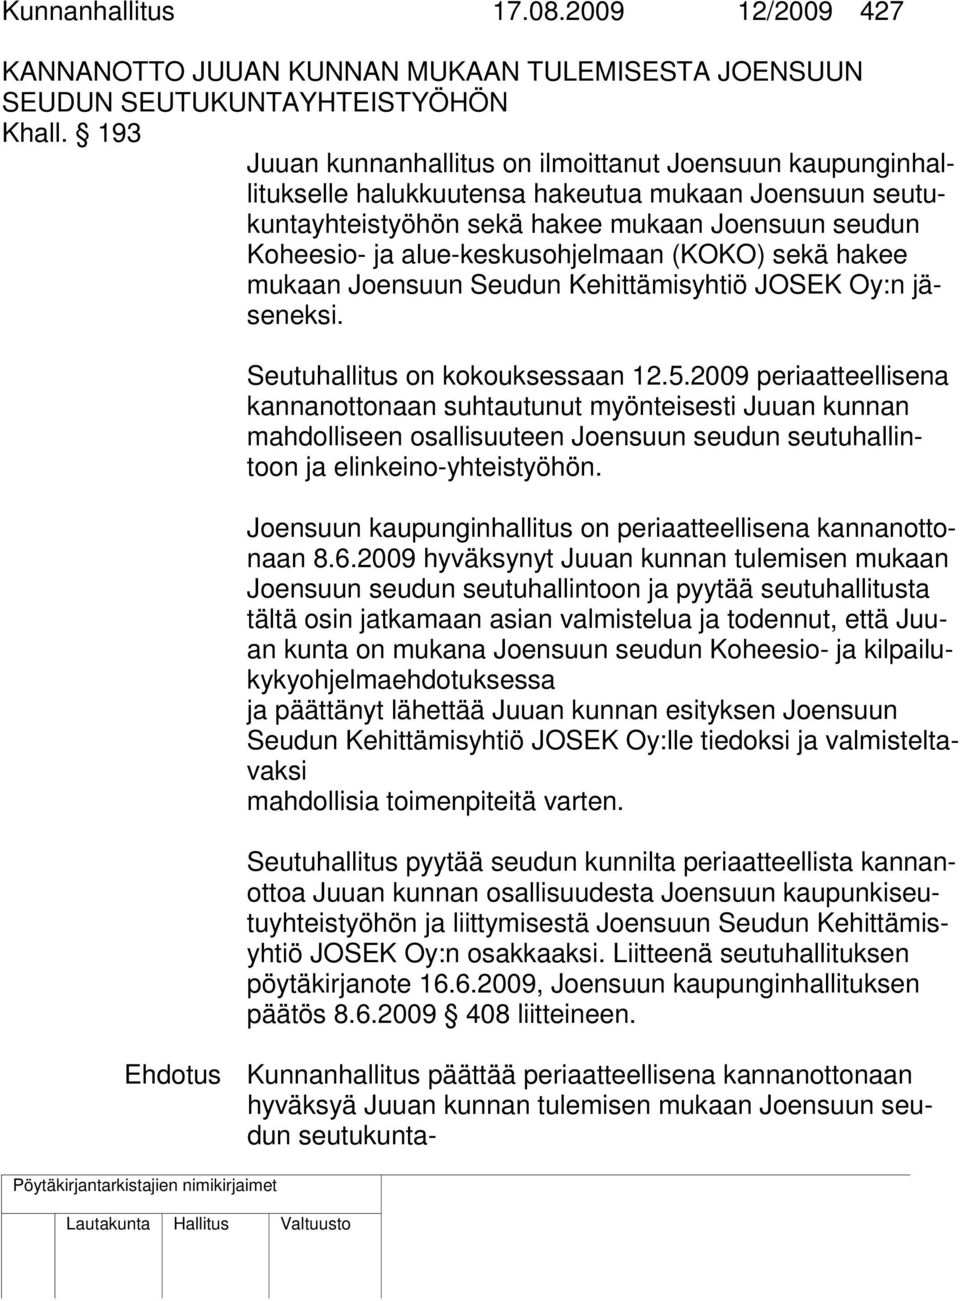 alue-keskusohjelmaan (KOKO) sekä hakee mukaan Joensuun Seudun Kehittämisyhtiö JOSEK Oy:n jäseneksi. Seutuhallitus on kokouksessaan 12.5.